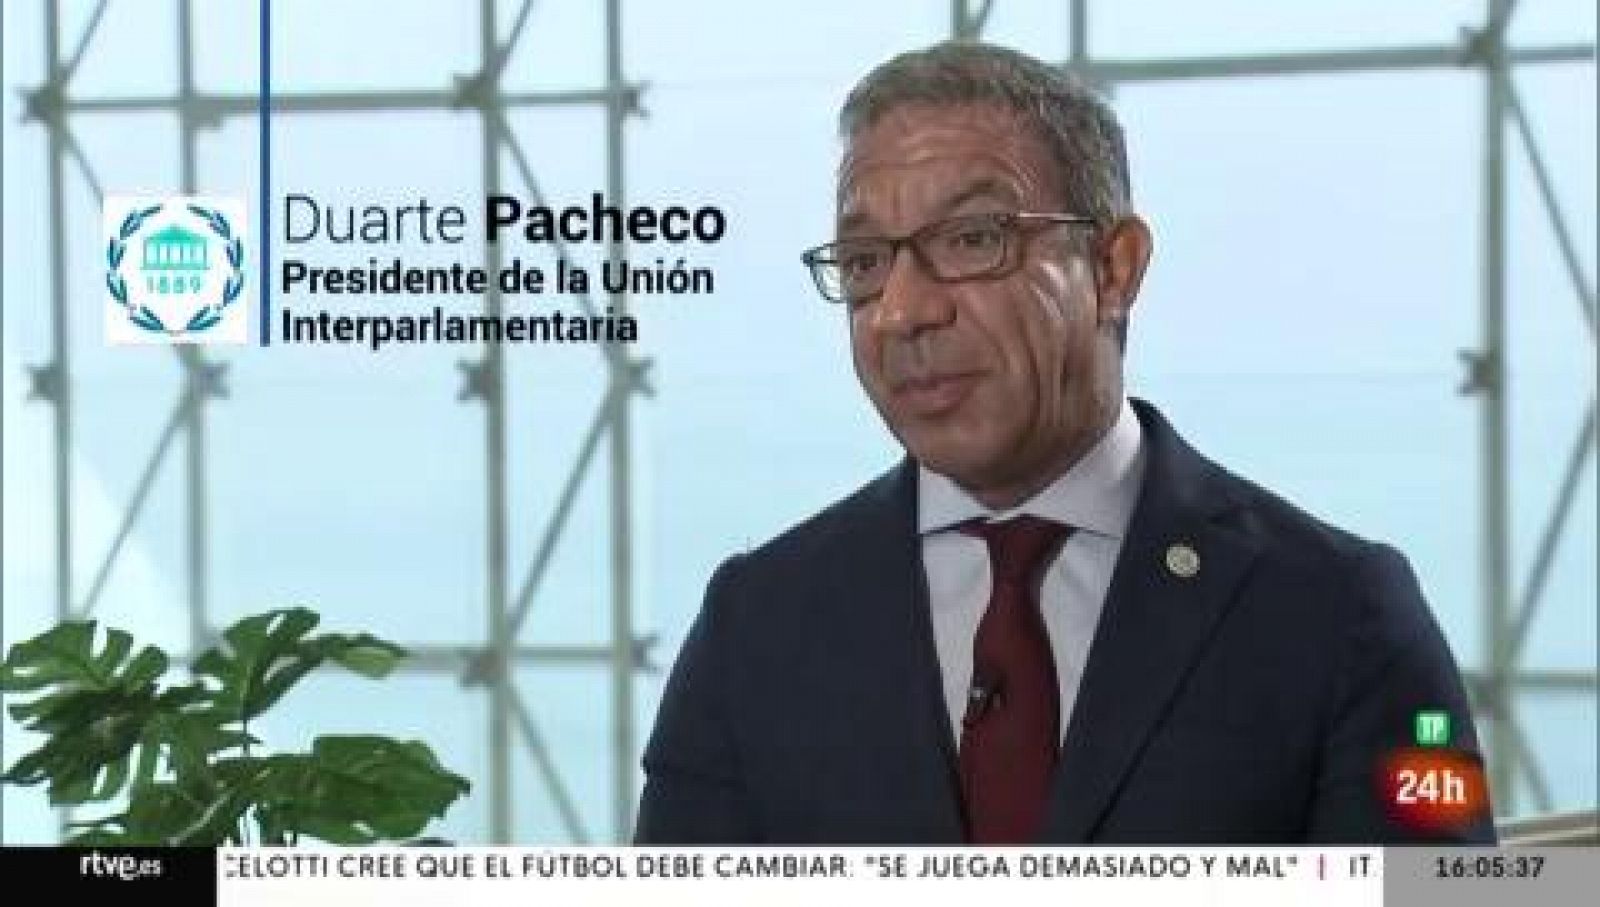 Parlamento - La entrevista - Duarte Pacheco, presidente de la Unión Interparlamentaria (UIP) - 27/11/2021